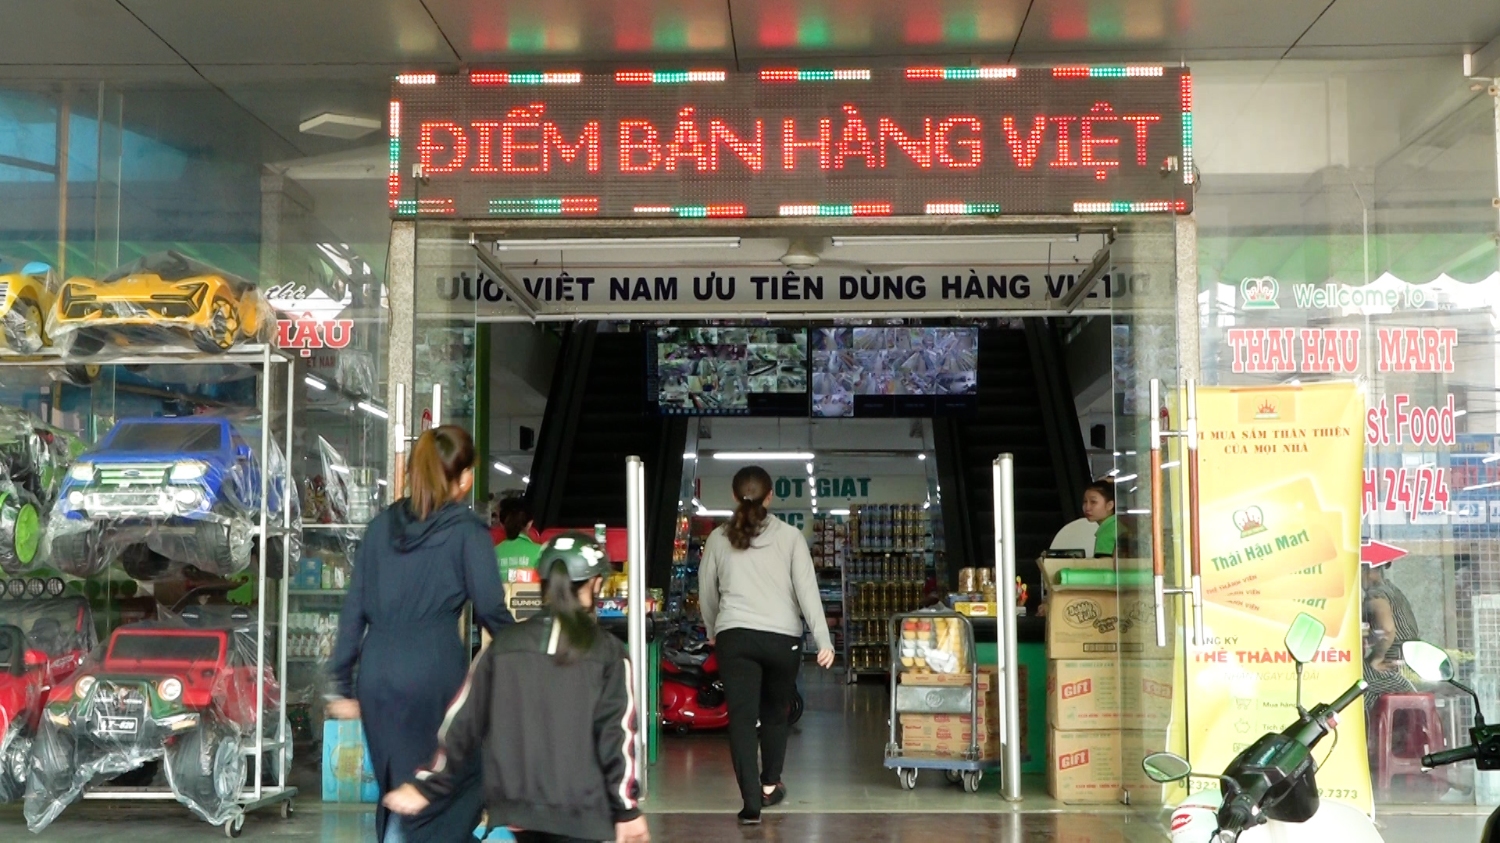 Siêu thị Thái Hậu thực hiện có hiệu quả cuộc vận động “Người Việt Nam ưu tiên dùng hàng Việt Nam”